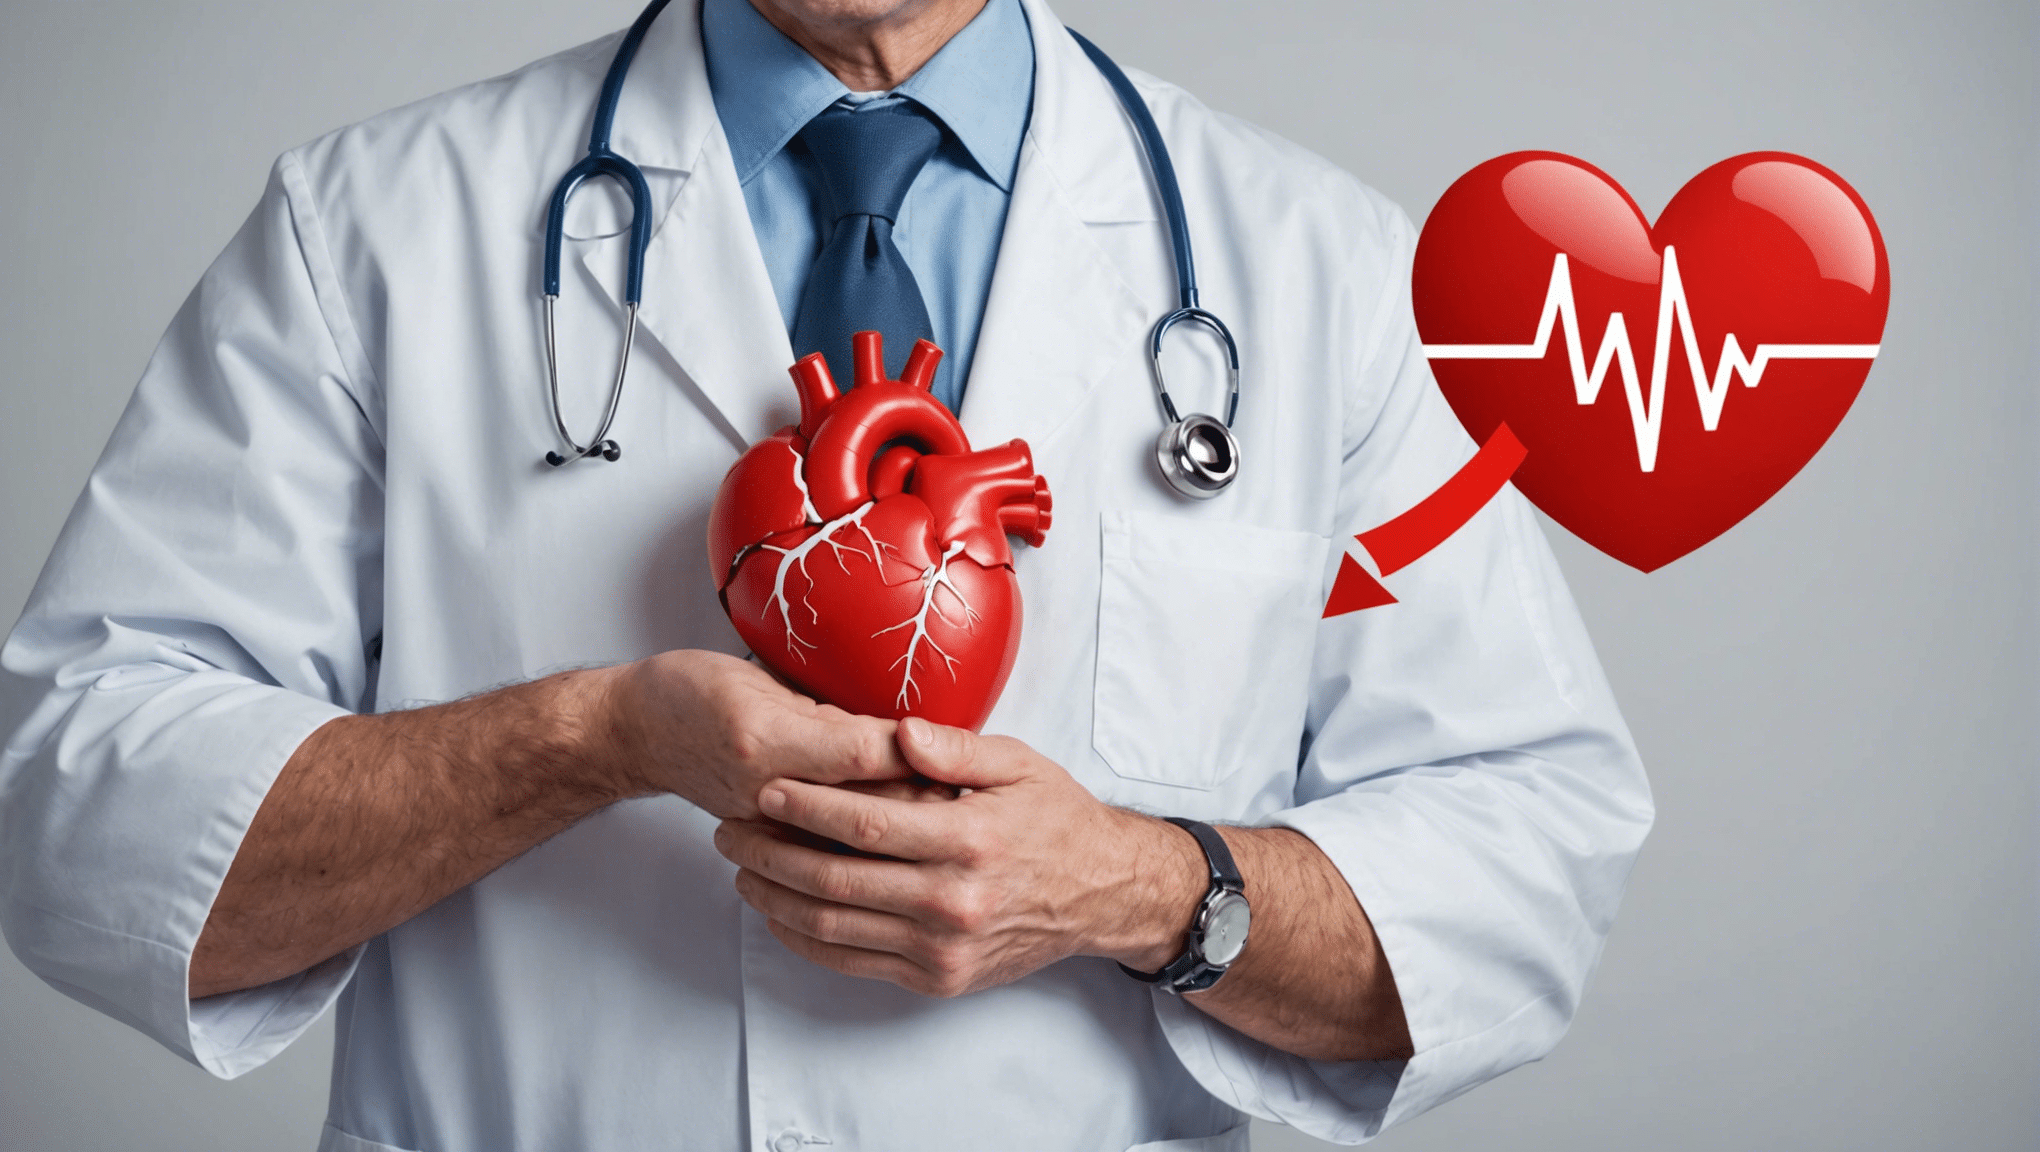 découvrez des conseils et astuces pour préserver votre santé cardiovasculaire et réduire les risques de maladies cardiovasculaires.